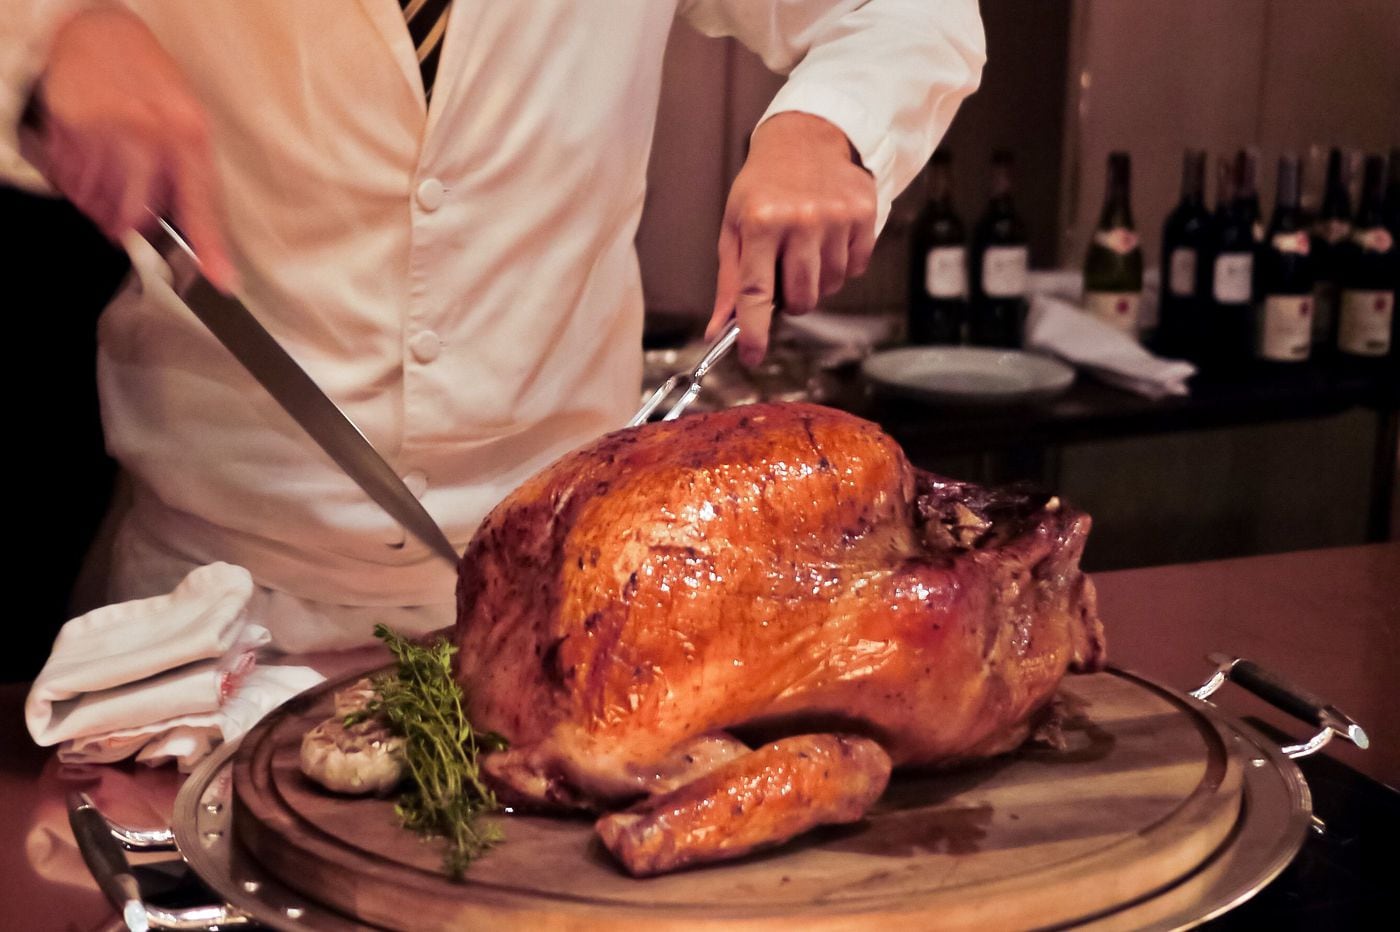 12 Philadelphia restaurants serving Thanksgiving dinner for 2019